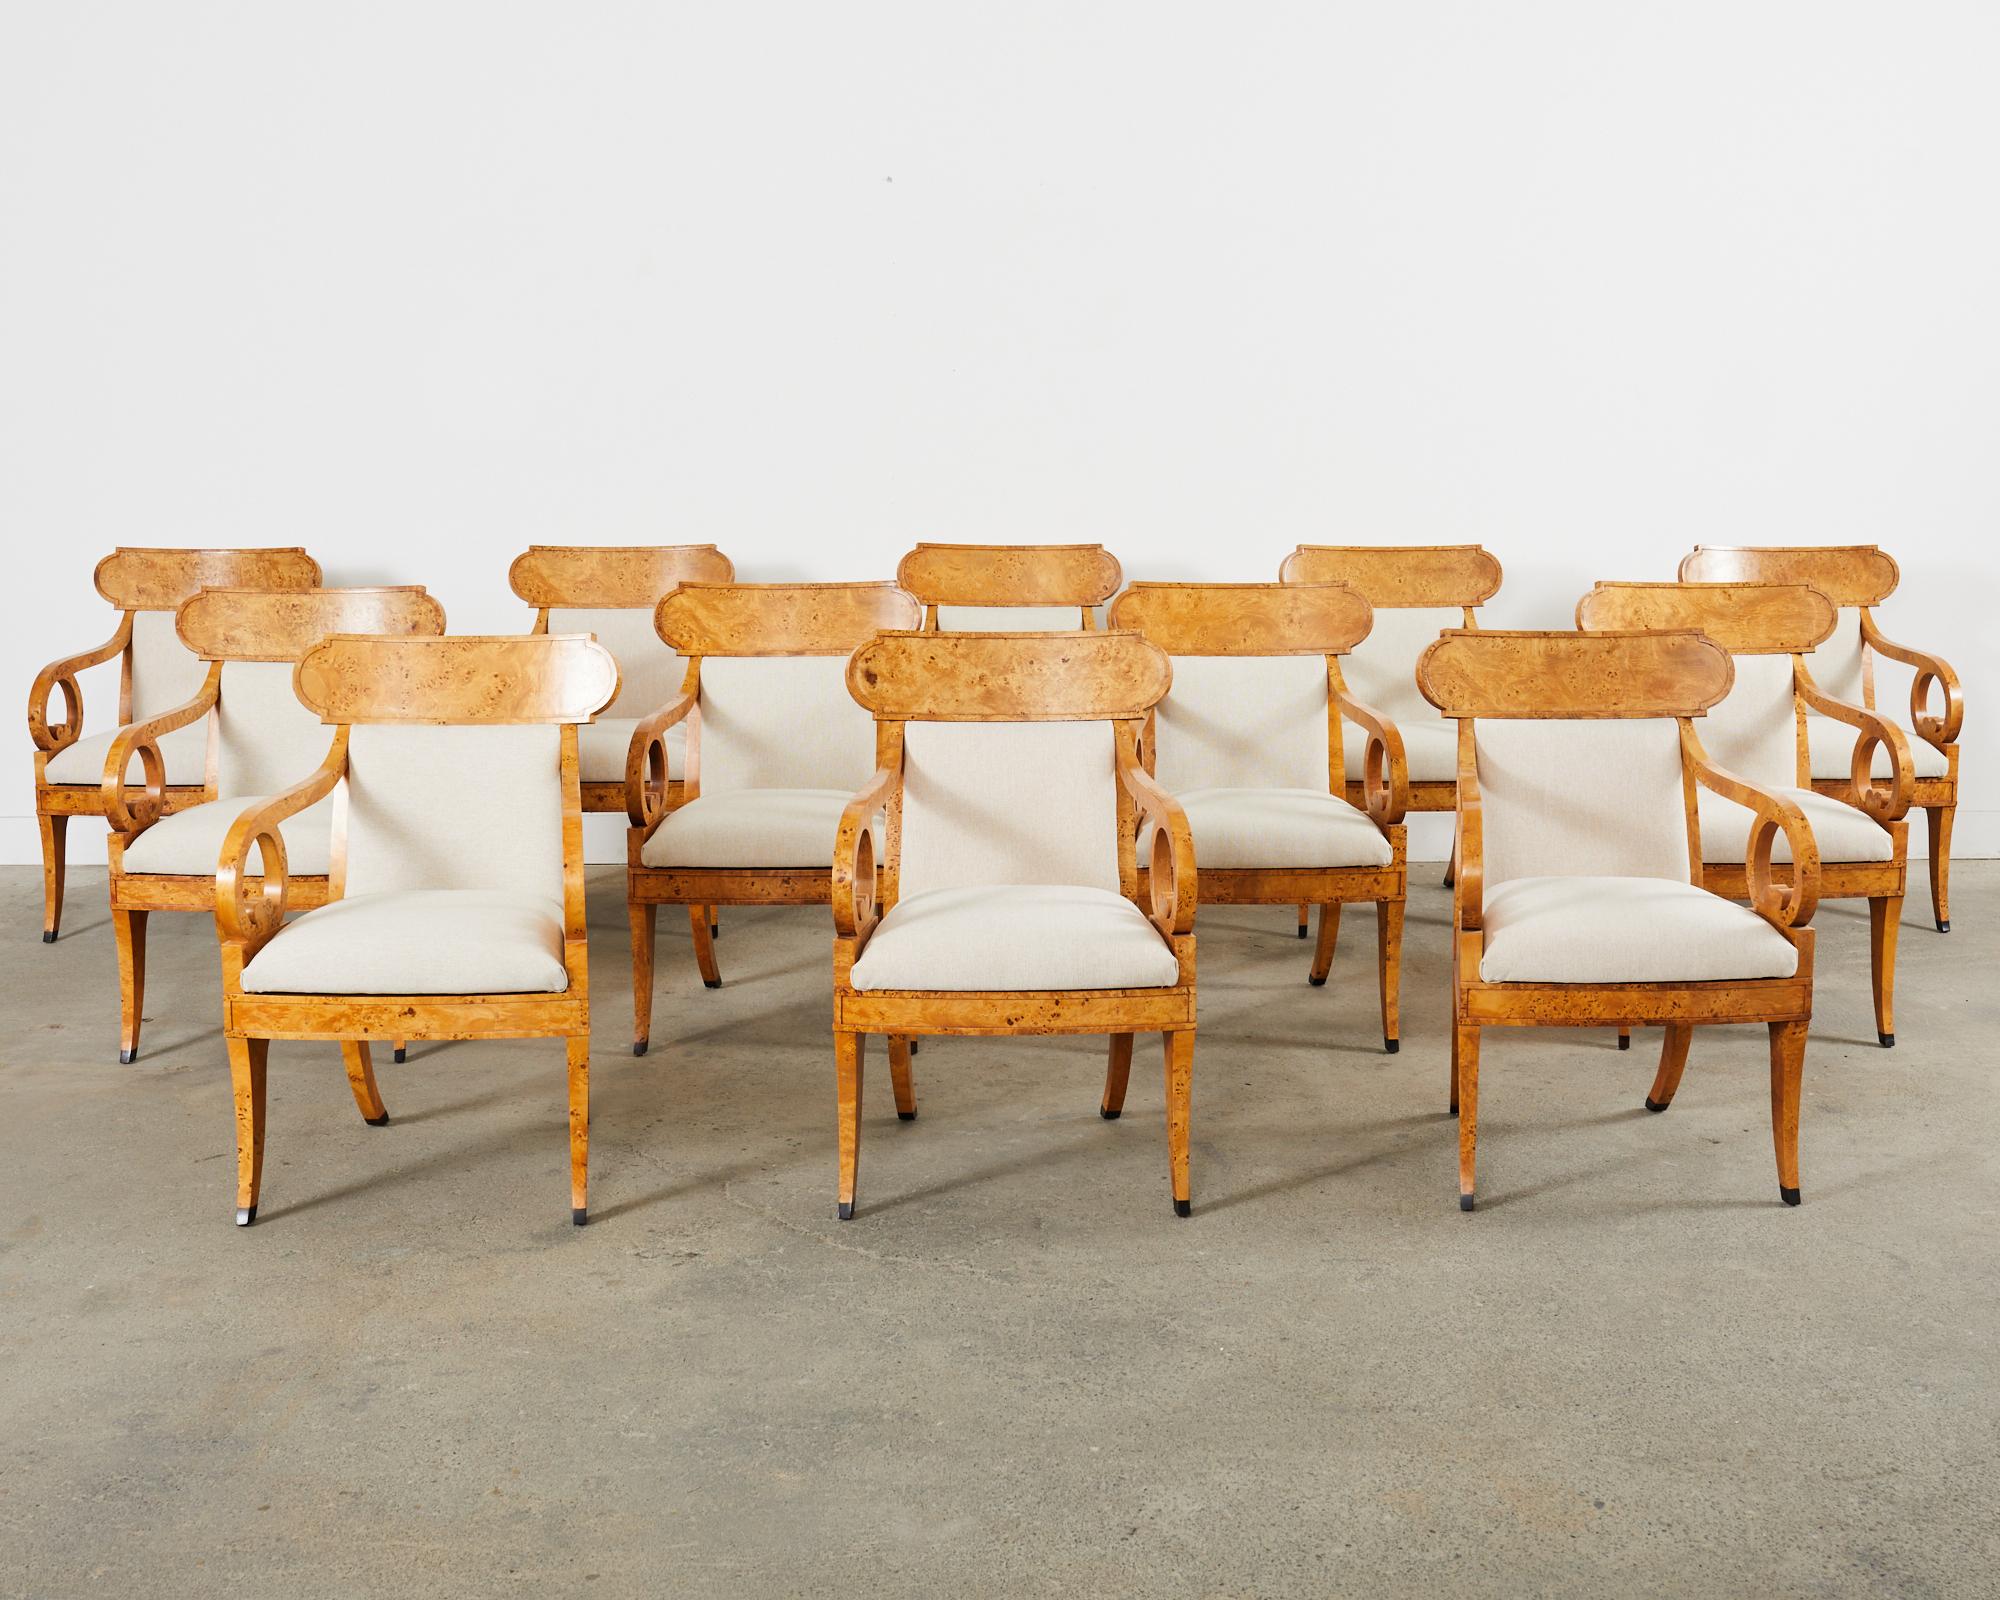 Magnifique ensemble de douze fauteuils ou chaises de salle à manger en klismos de style Regency anglais, fabriqués par Baker Furniture. Les cadres sont fabriqués à la main et soigneusement recouverts de placages de bois de ronce. Le dossier incurvé